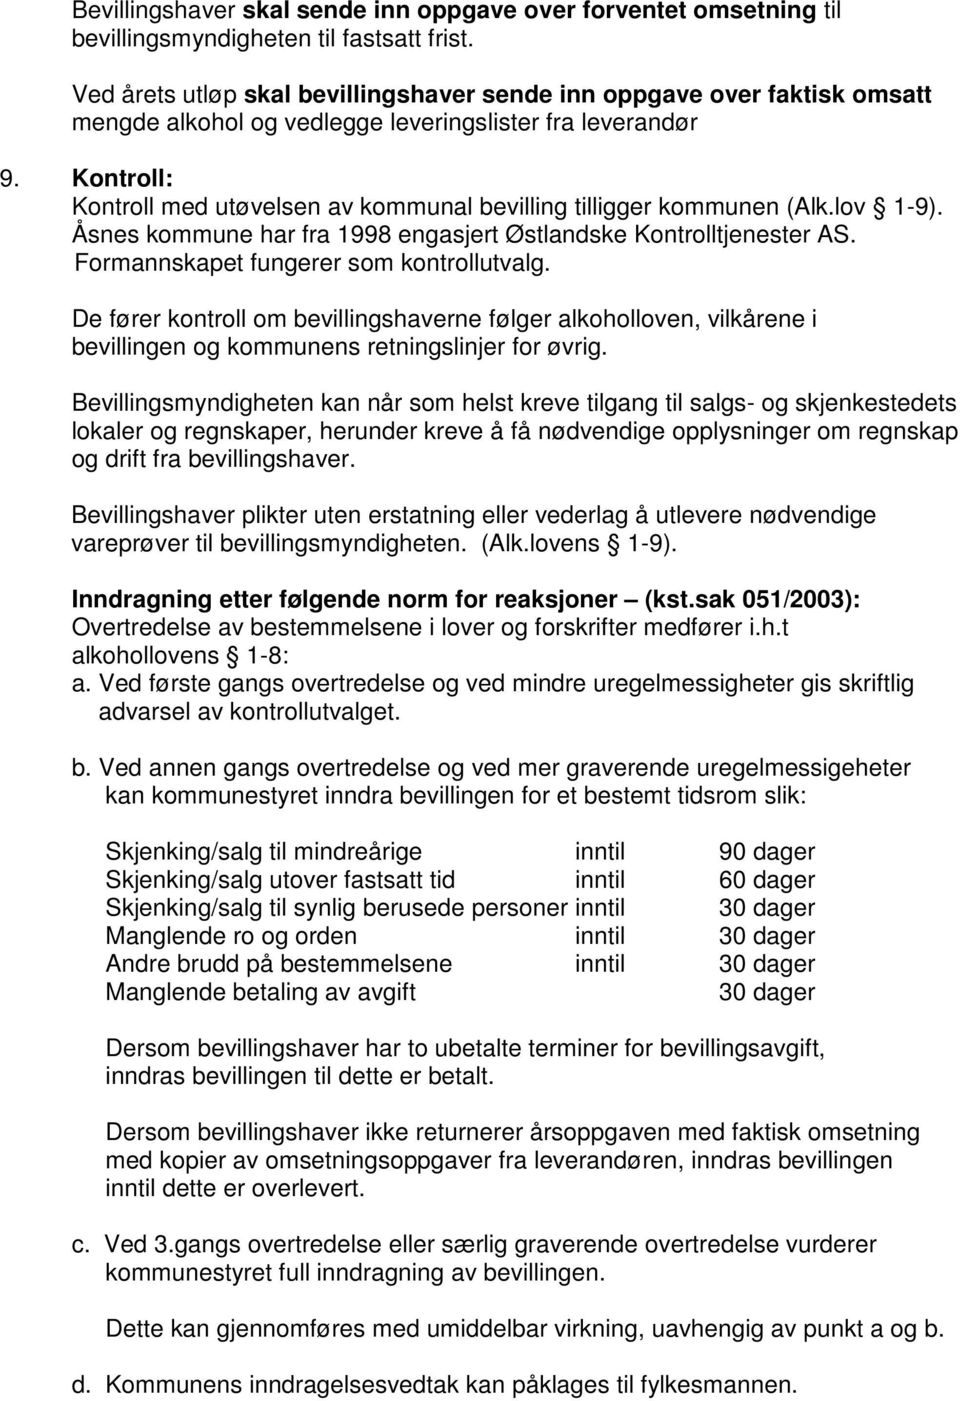 Kontroll: Kontroll med utøvelsen av kommunal bevilling tilligger kommunen (Alk.lov 1-9). Åsnes kommune har fra 1998 engasjert Østlandske Kontrolltjenester AS.